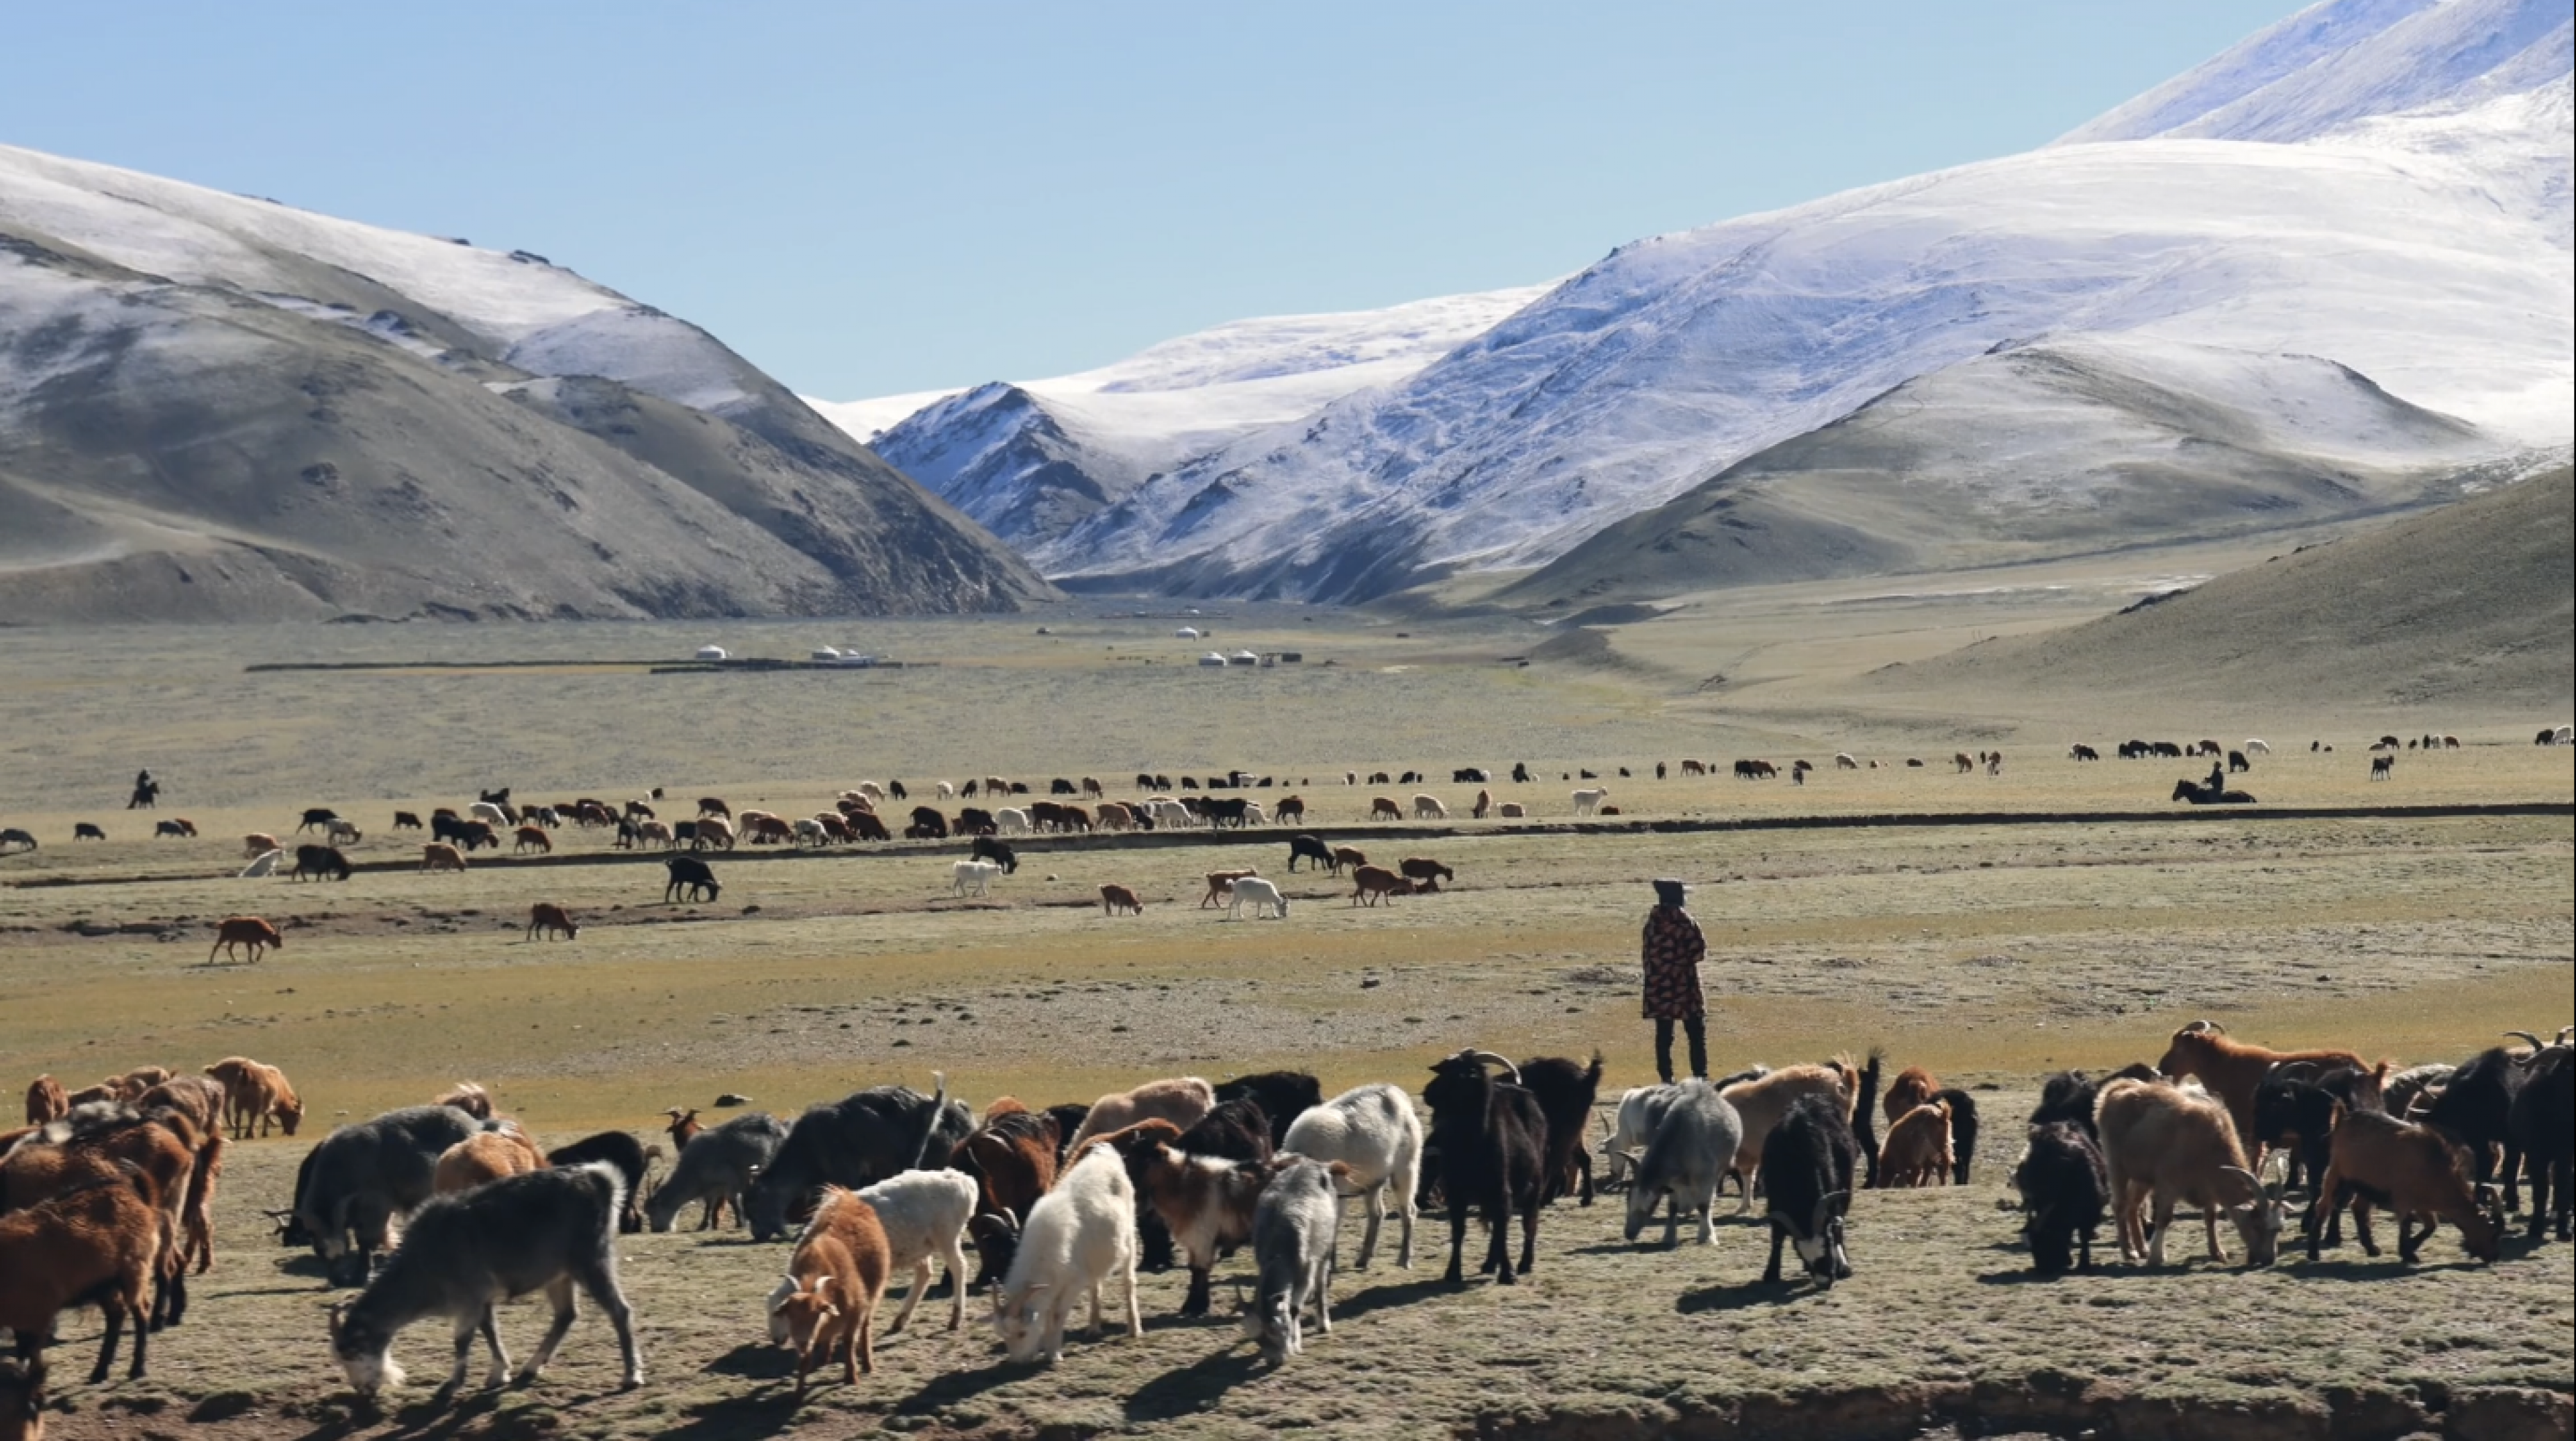 Image destination-mongolia.png